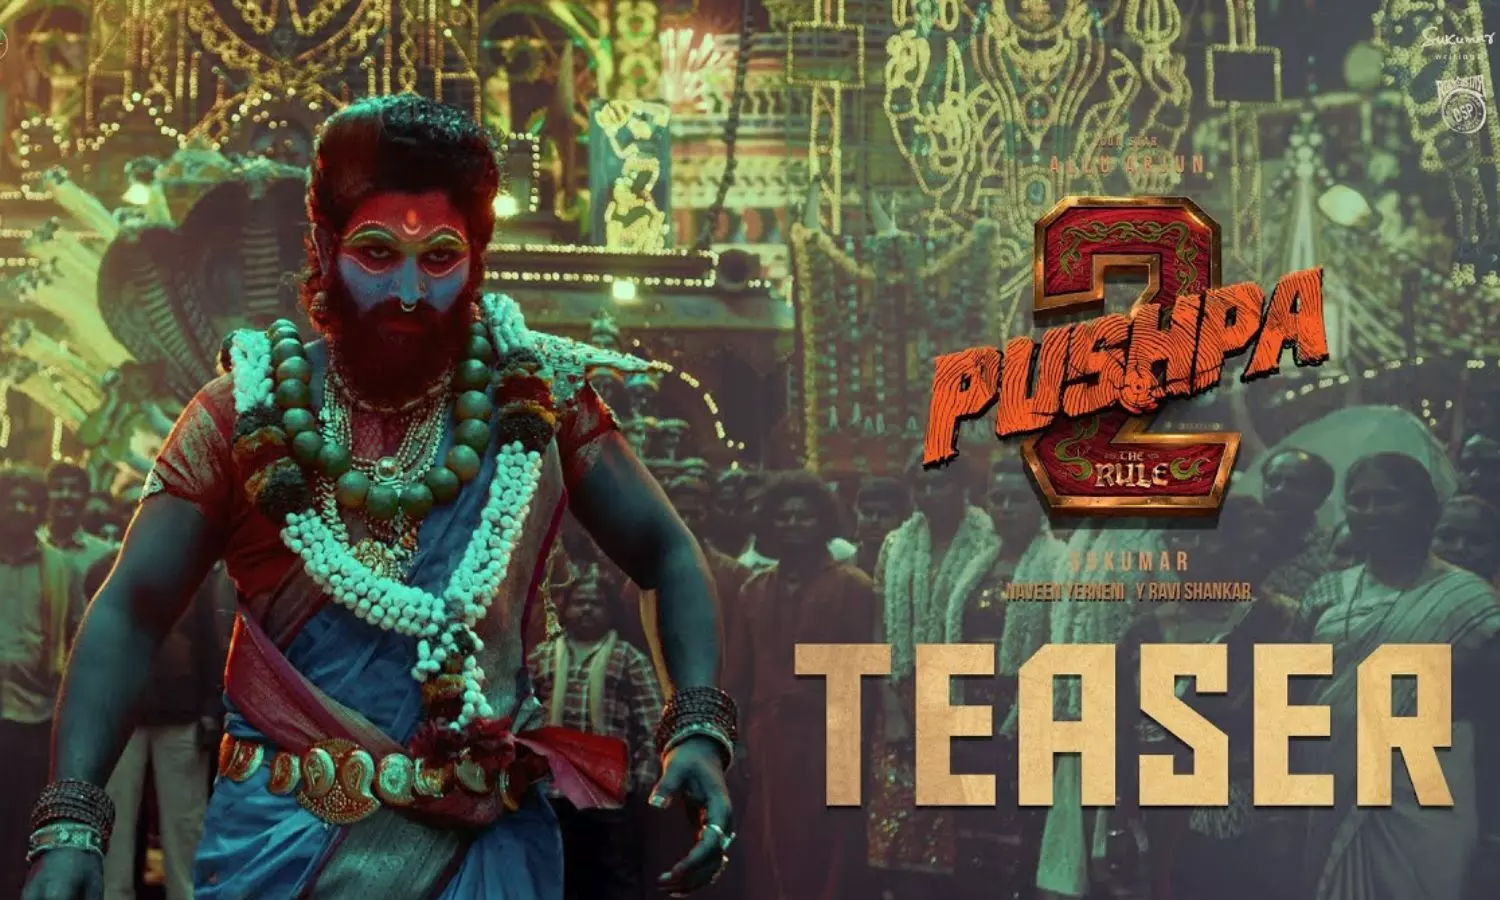 Pushpa 2: The Rule Teaser! Watch Pushpa Raj Return in Fiery Action